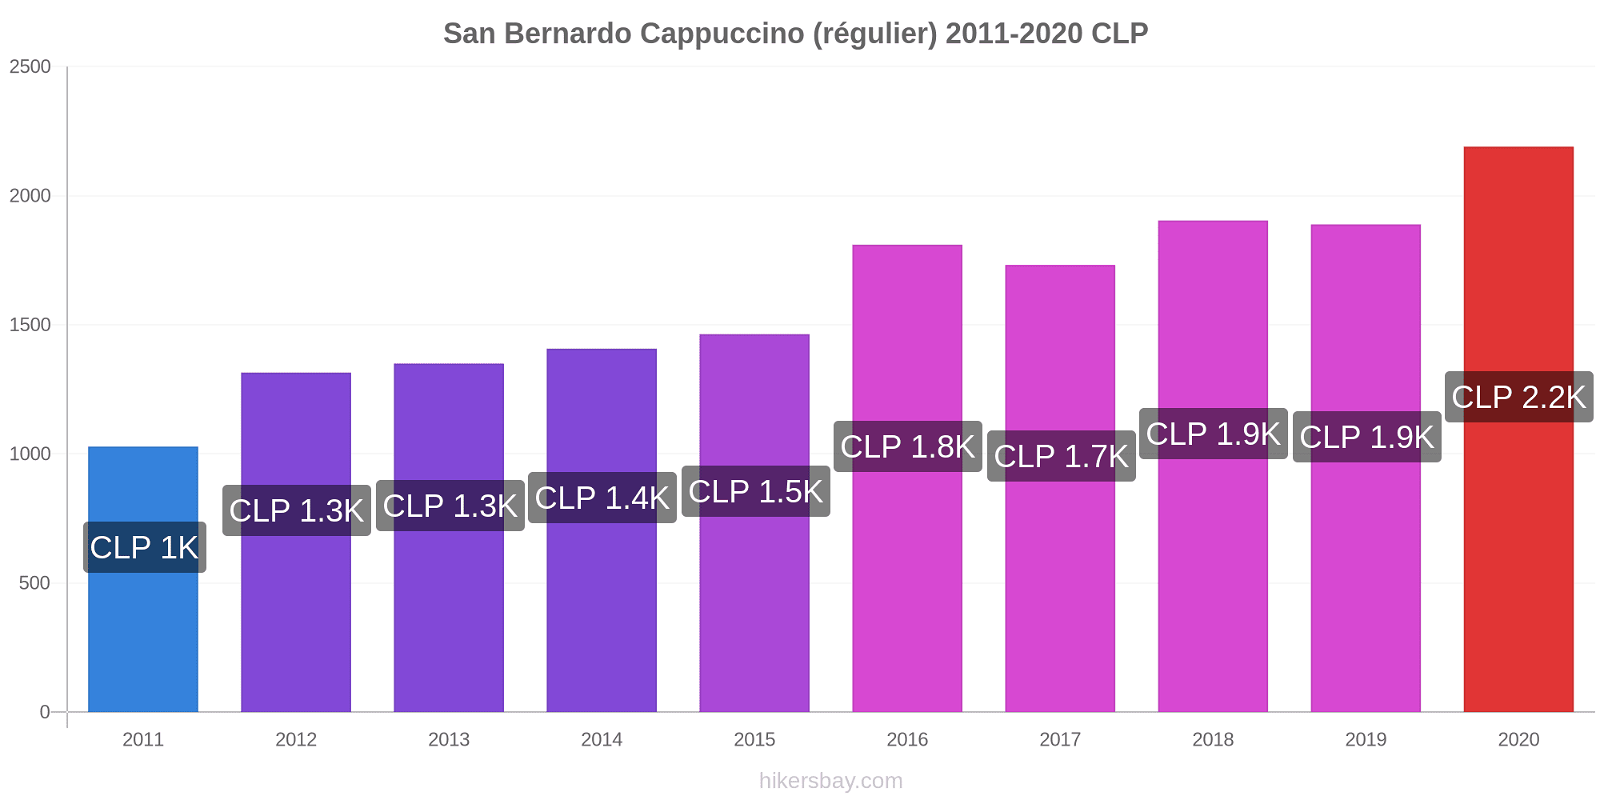 San Bernardo changements de prix Cappuccino (régulier) hikersbay.com